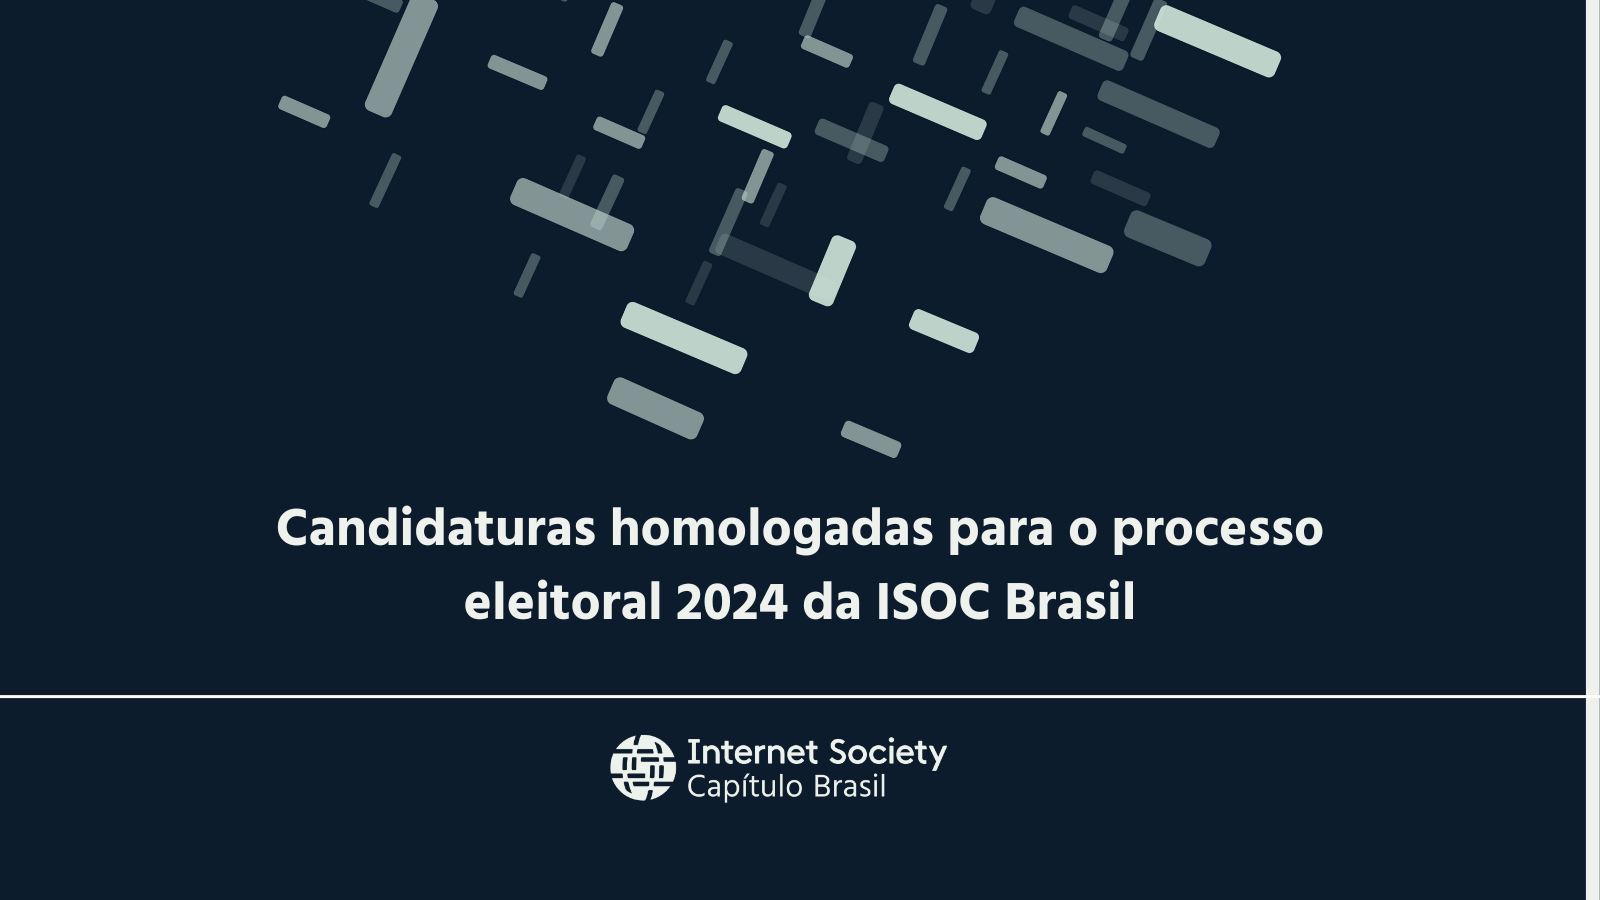 Candidaturas homologadas para o processo eleitoral 2024 da ISOC Brasil